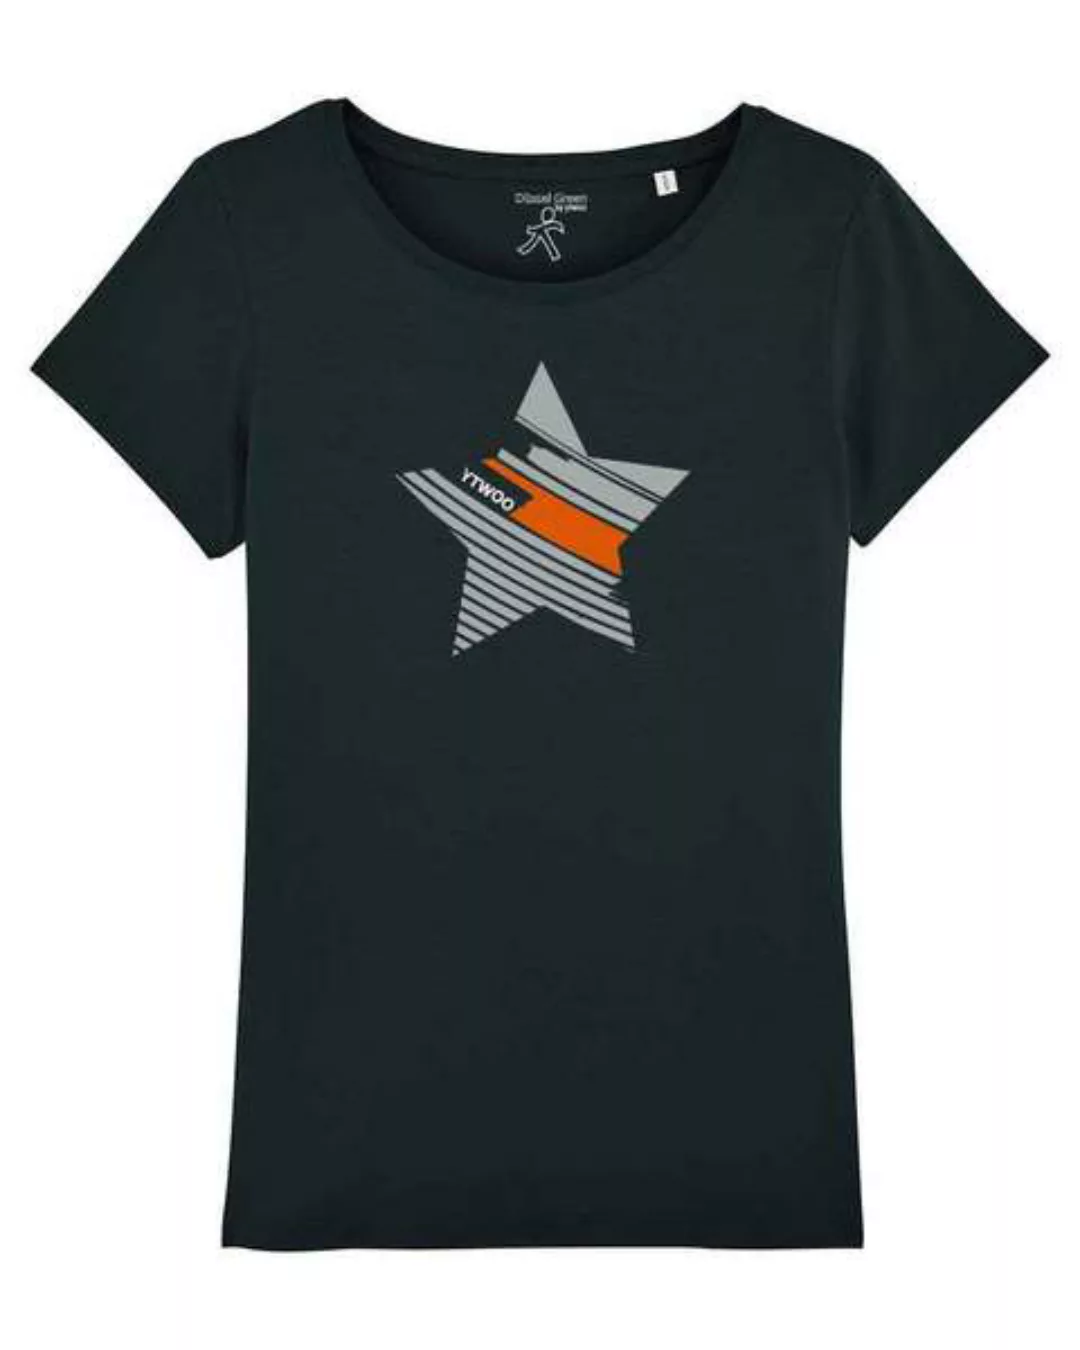 Damen T-shirt Mit Stern In Verschiedenen Varianten, Stern Shirt günstig online kaufen